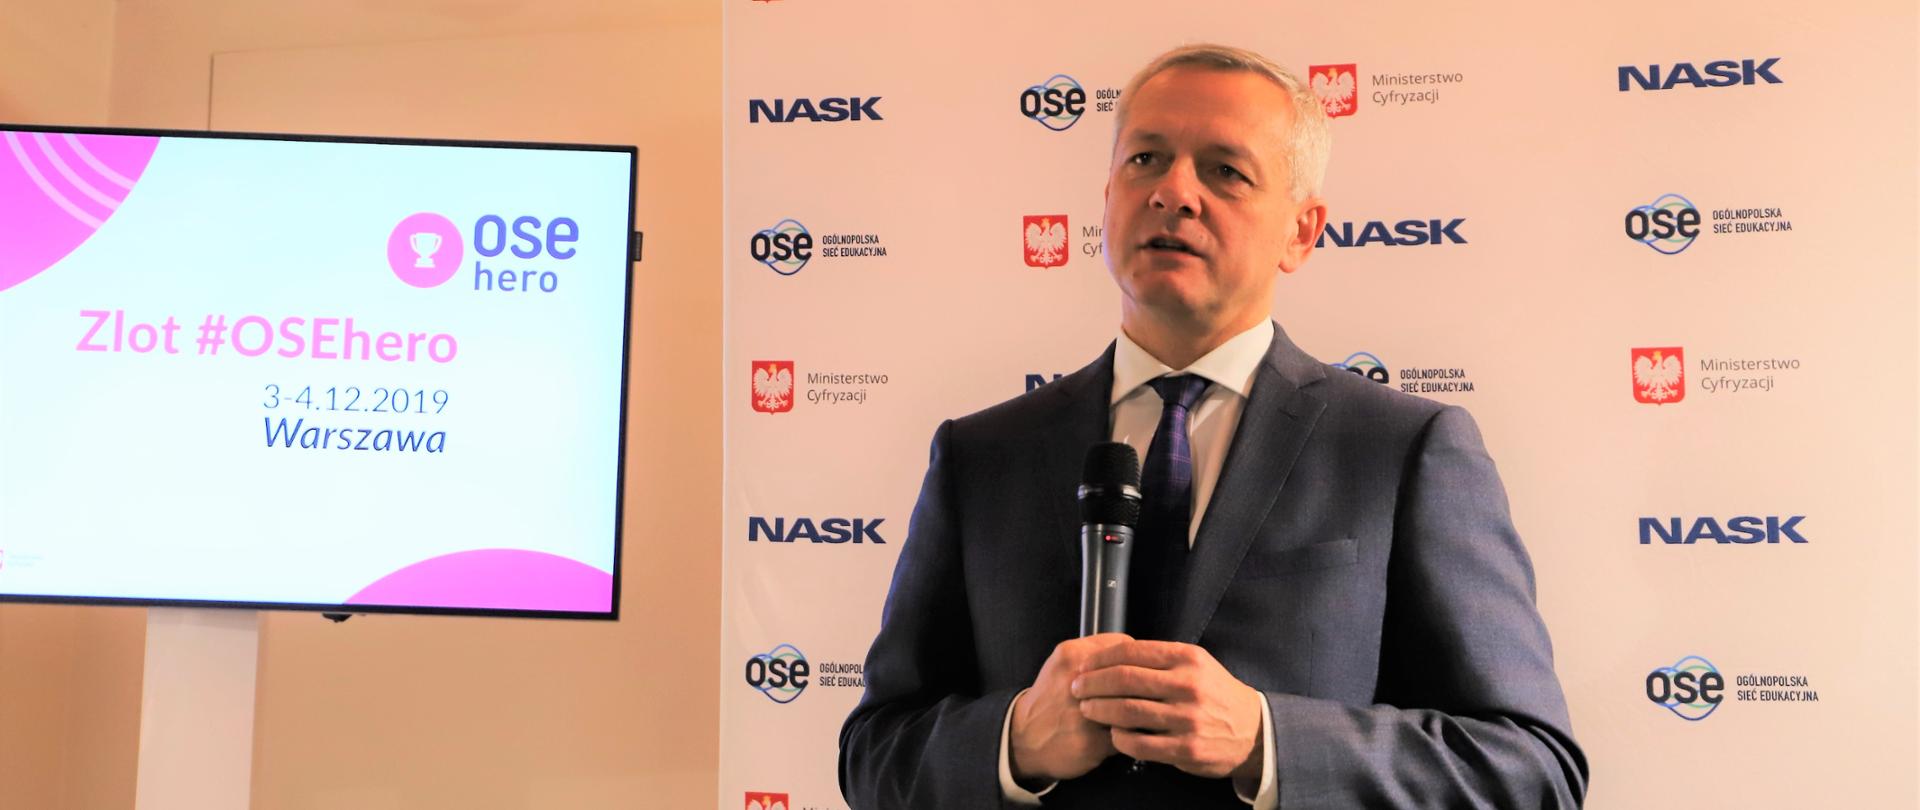 Minister cyfryzacji Marek Zagórski wypowiada się przez mikrofon.